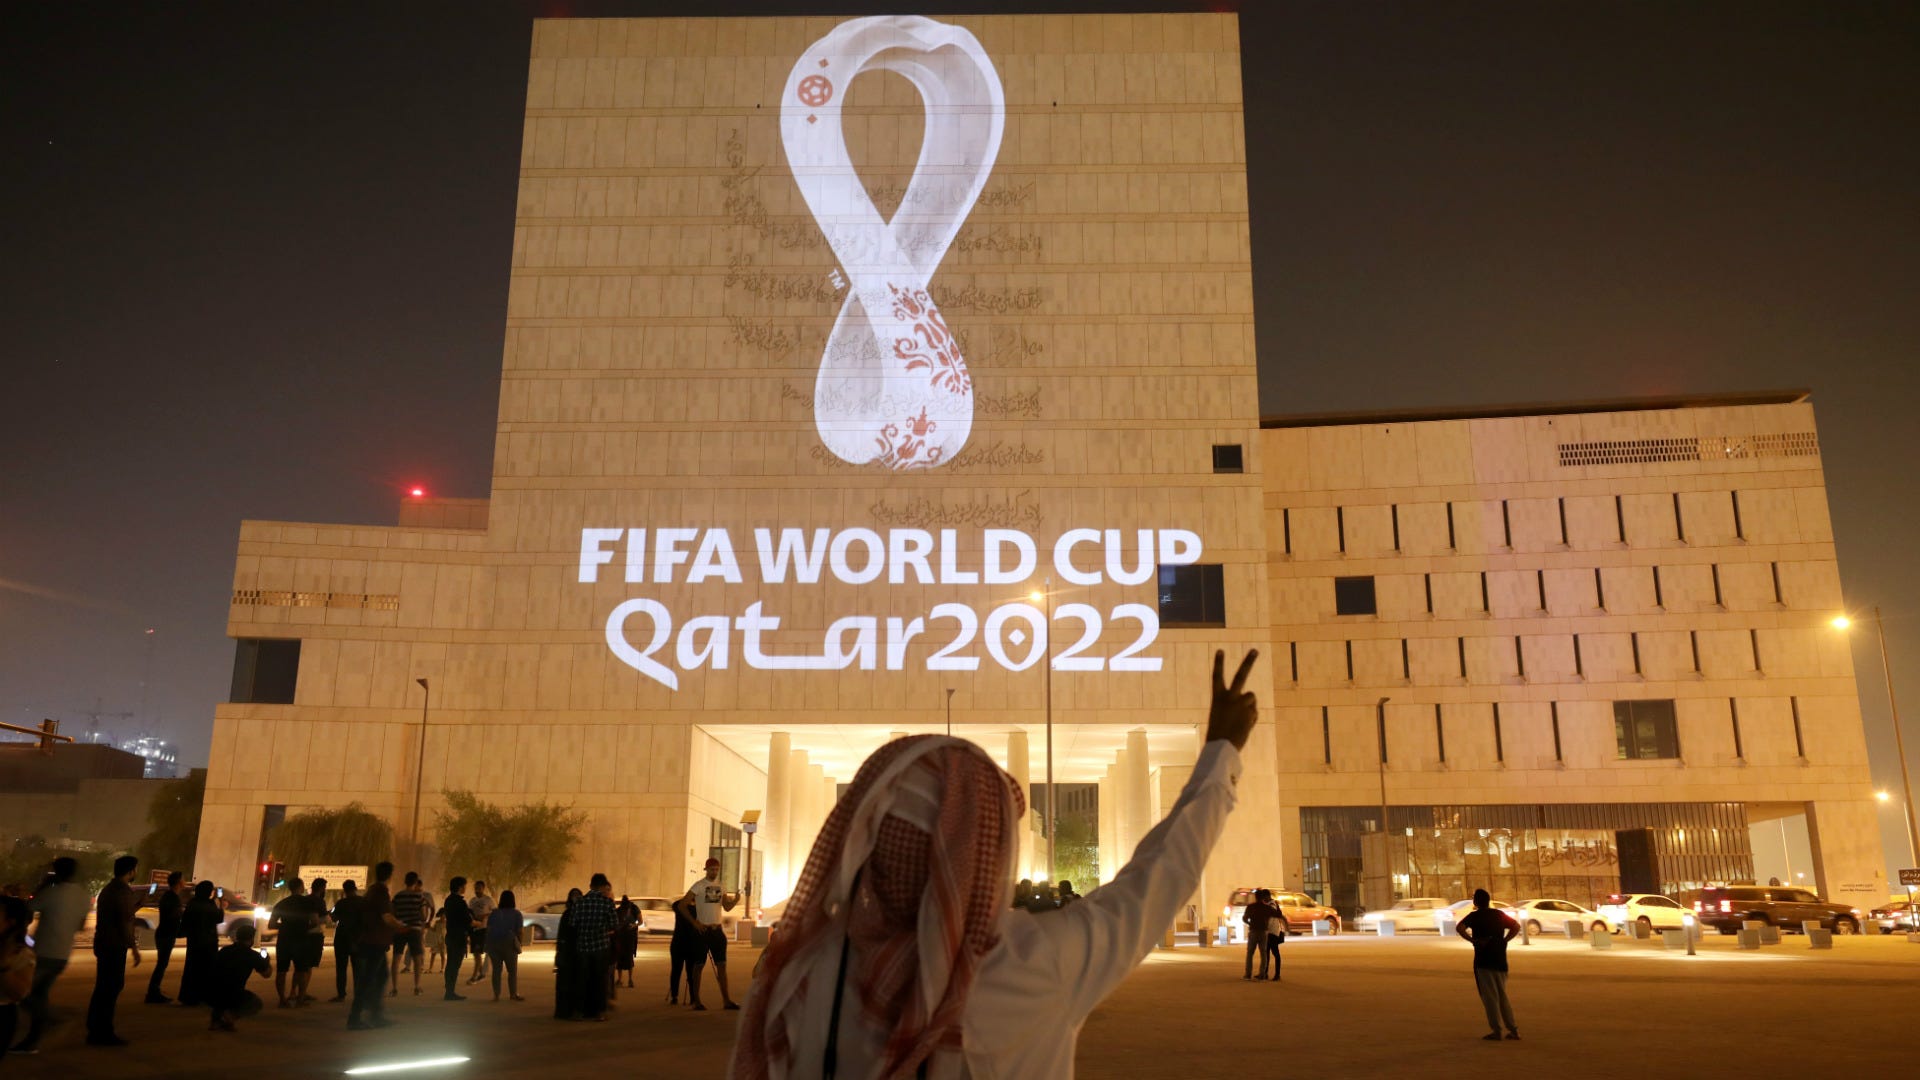 テクノロジーと革新――2022年W杯開催に疑念を抱く者たちへの答えを出そうとしているカタール | Goal.com 日本